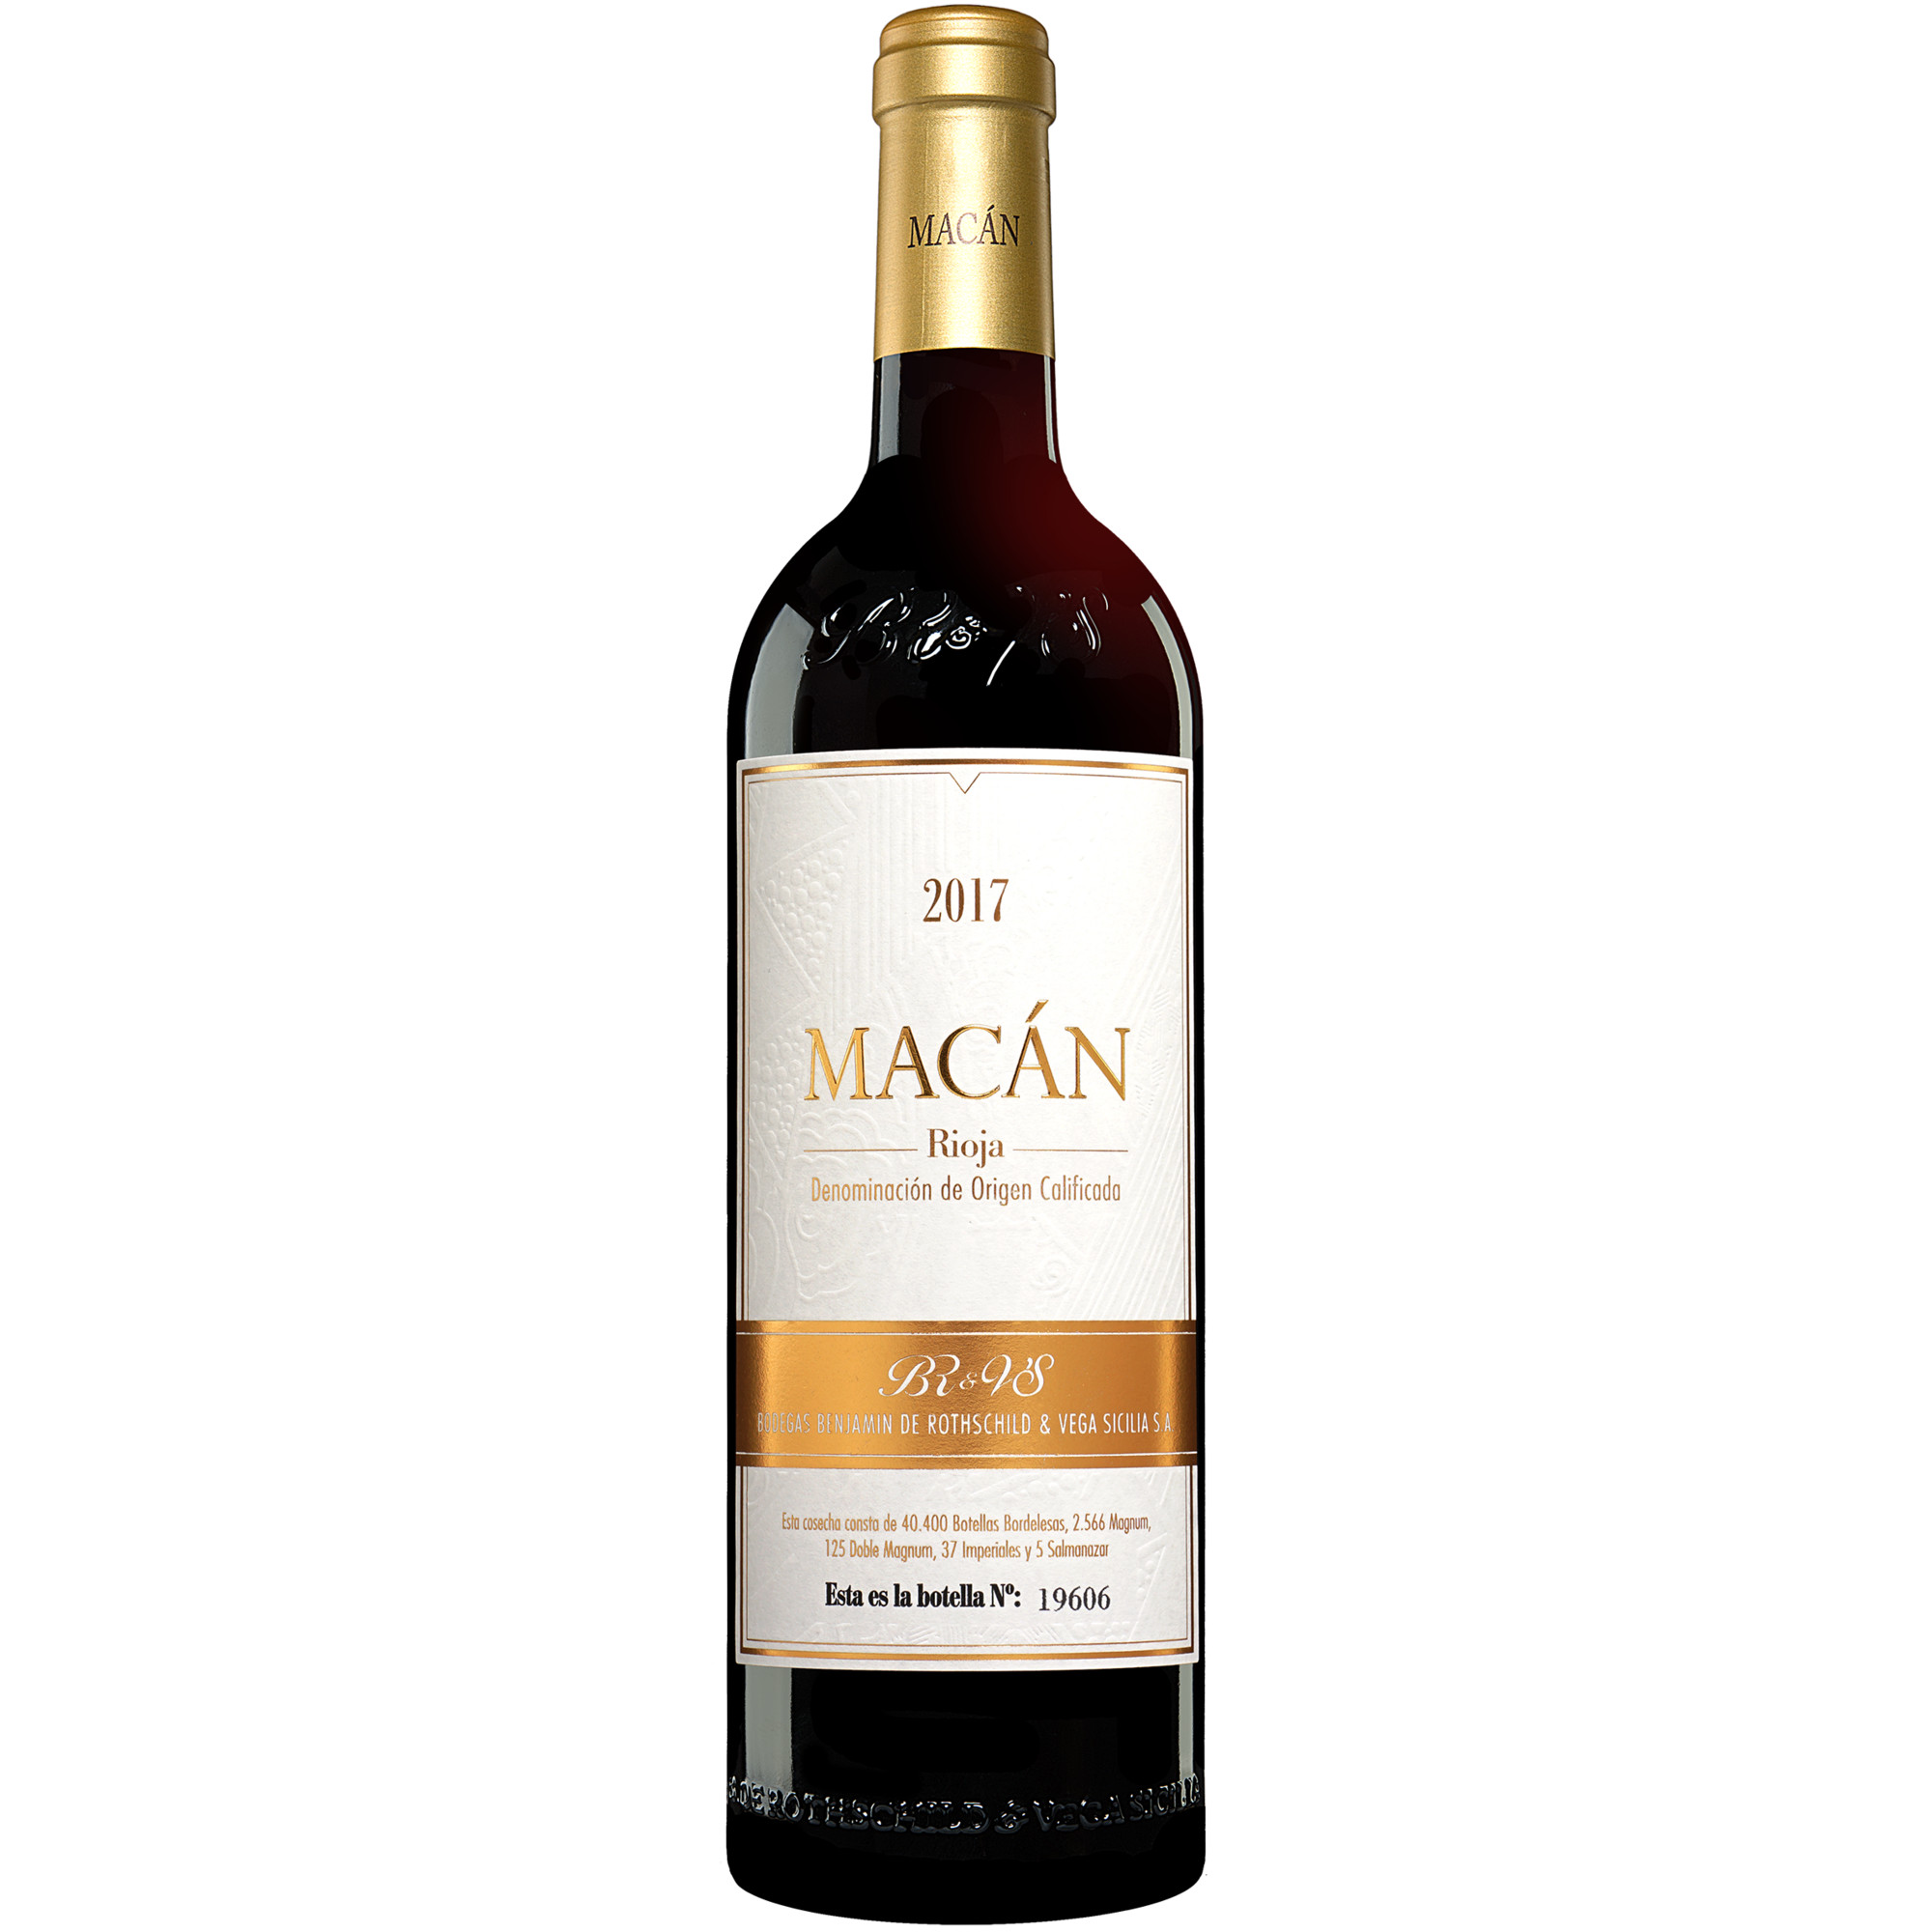 Vega Sicilia »Macán« 2017  014.5% Vol. Rotwein Trocken aus Spanien